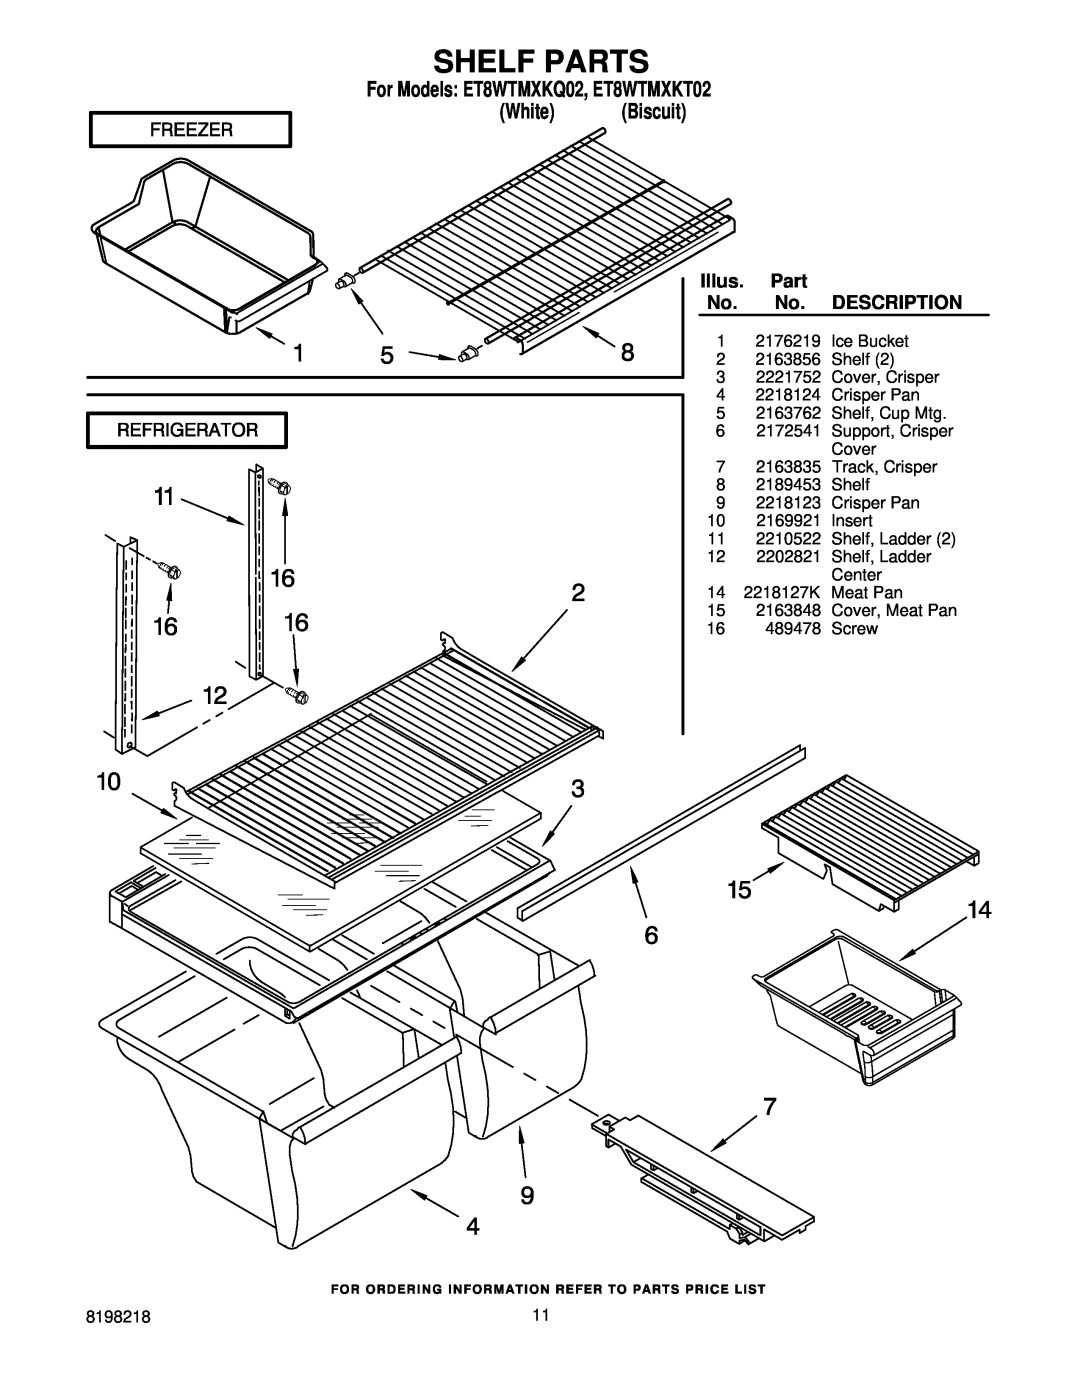 Whirlpool manual Shelf Parts, Illus, Description, For Models ET8WTMXKQ02, ET8WTMXKT02 White Biscuit 